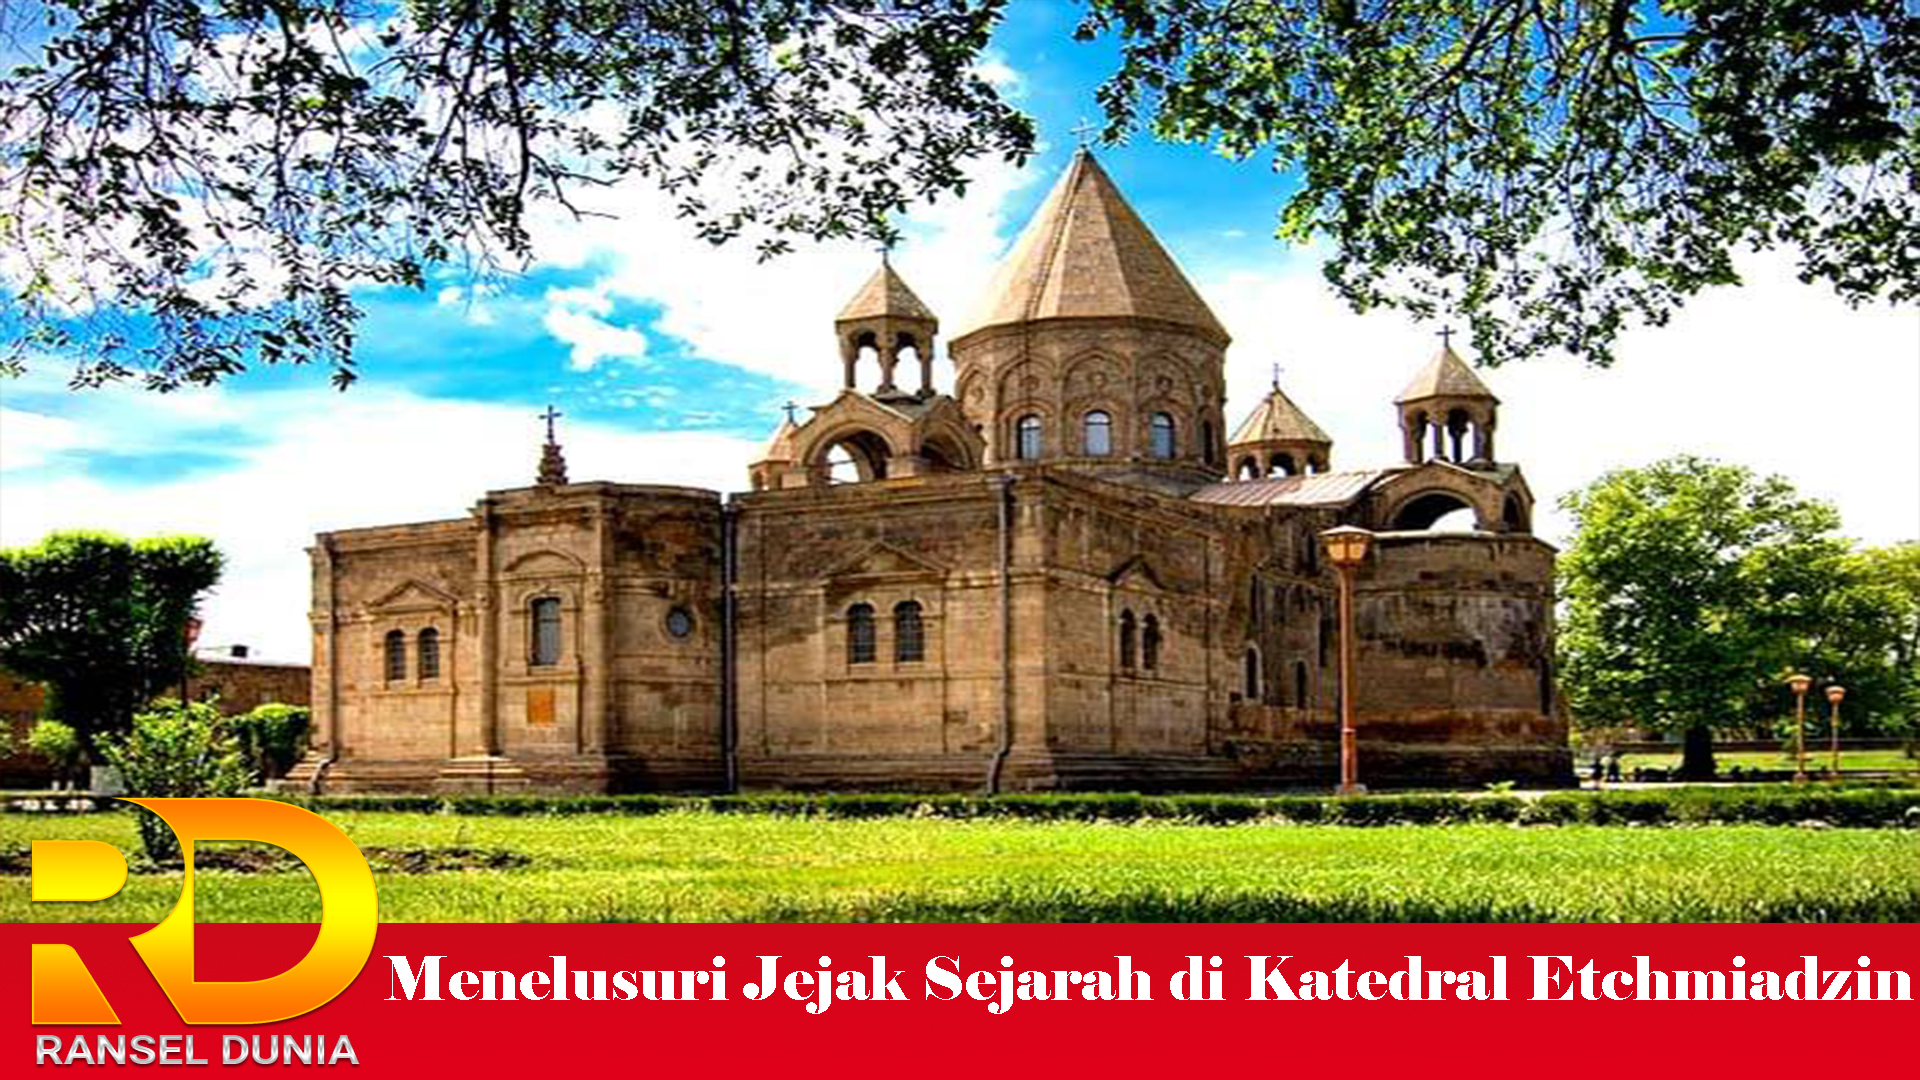 Menelusuri Jejak Sejarah di Katedral Etchmiadzin